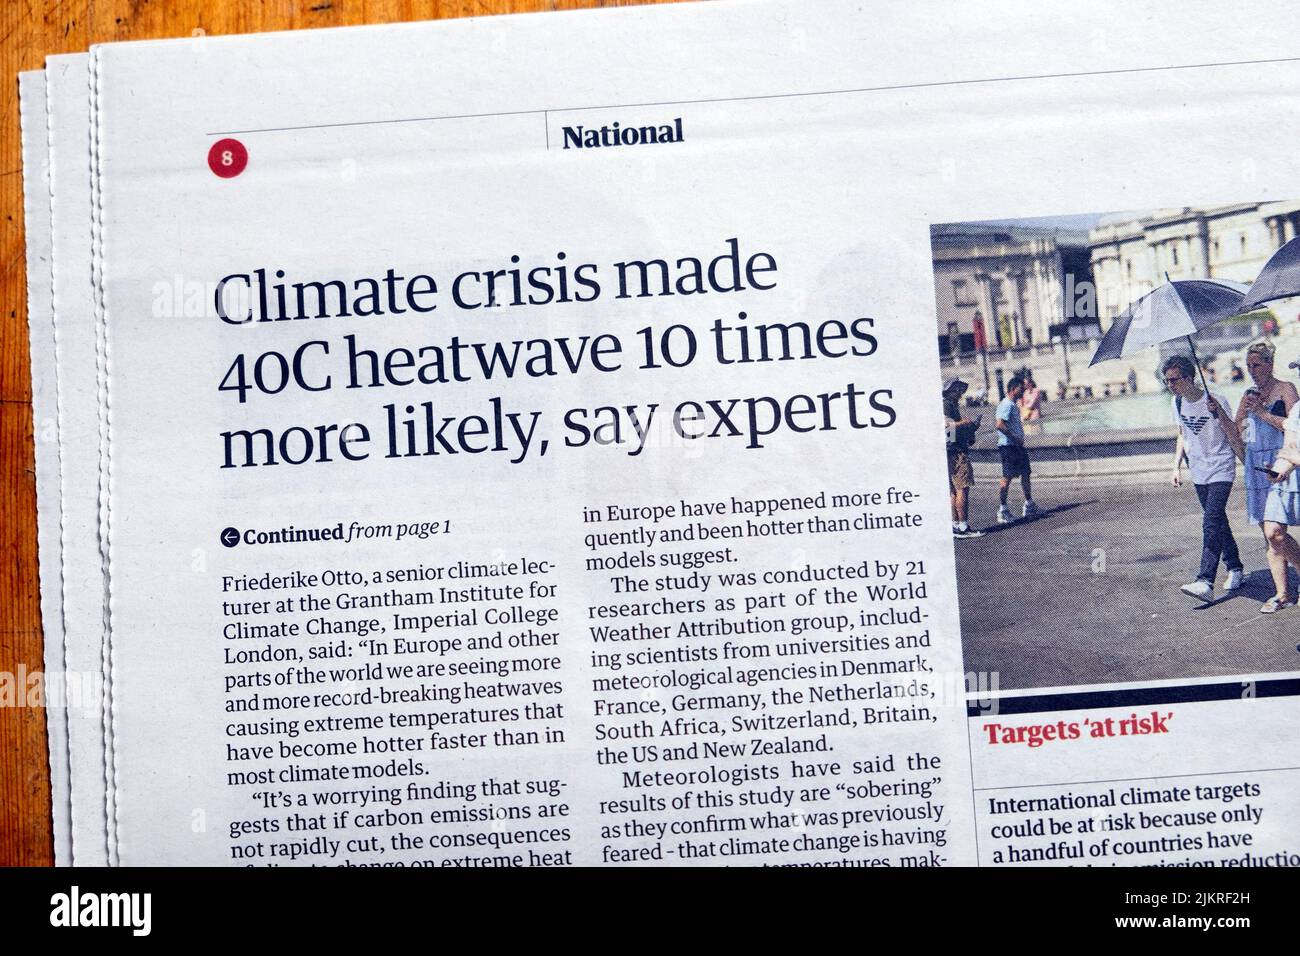 'La crisis climática hizo que la ola de calor de 40C fuera 10 veces más probable, dicen los expertos' El periódico Guardian artículo sobre el calentamiento global 29 de abril de 2022 Londres Reino Unido Foto de stock